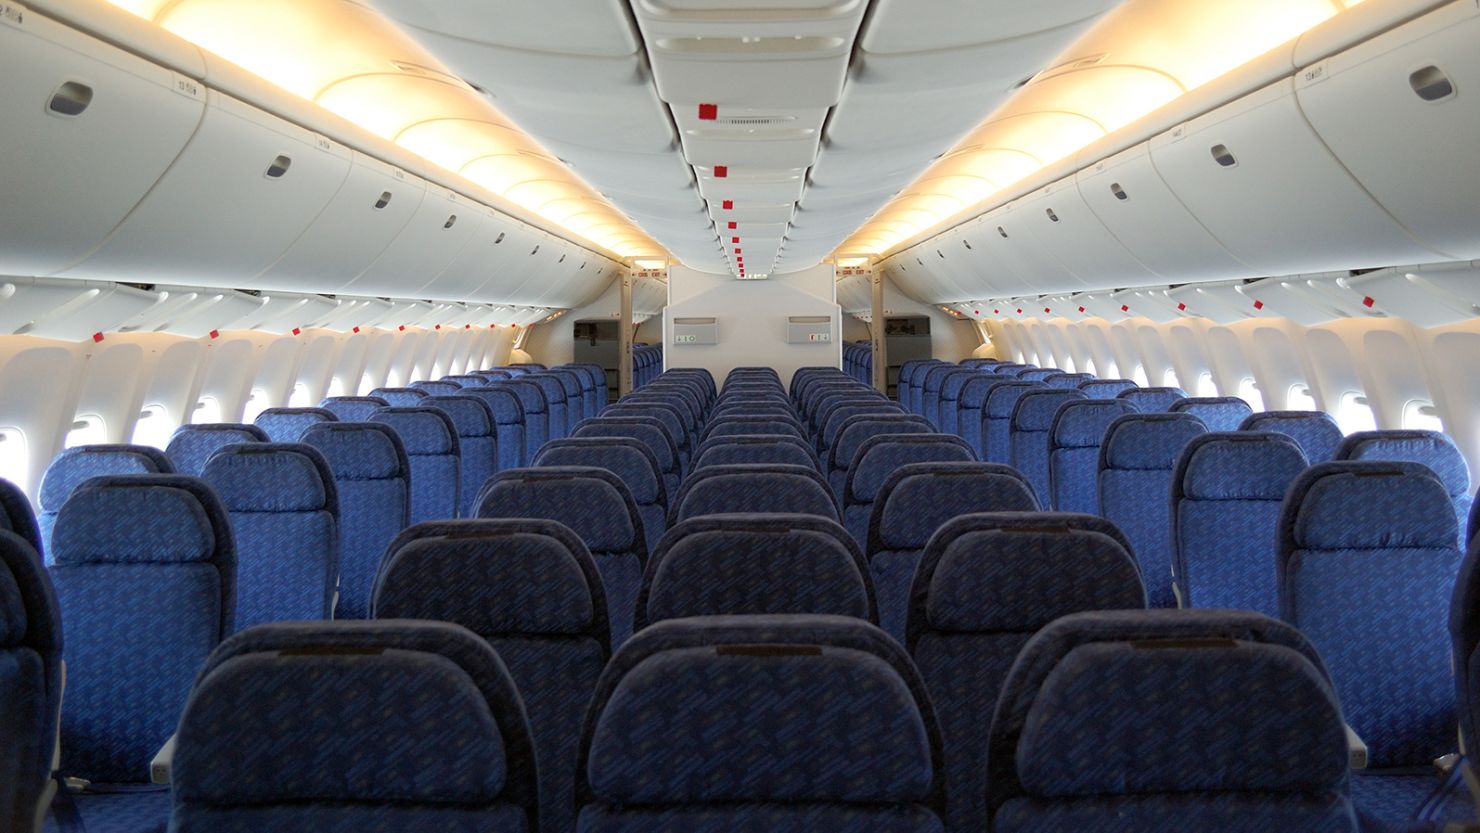 Inside a passenger aircraft cabin.